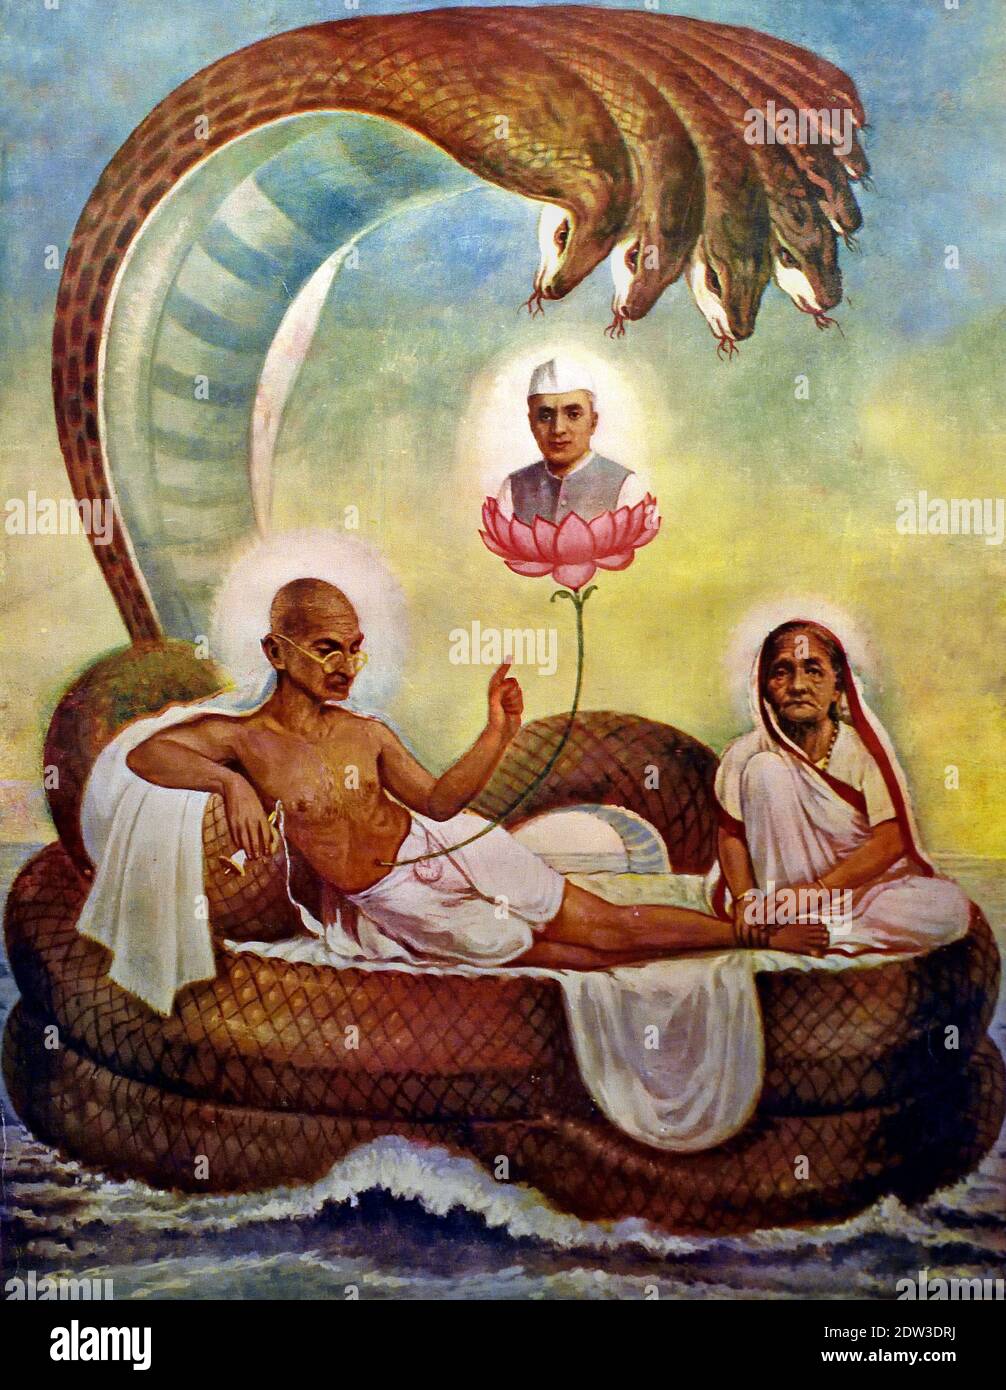 Gandhi come Vishnu sul serpente Ananta in rappresentazioni di Vishnu un loto cresce dal suo ombelico su cui si trova Brahma, simbolizzando la creazione. India, indiano, ( Mahatma Gandhi (1869-1948, Mohandas Karamchand Gandhi) combattente per la libertà e sostenitore di campagna nonviolenta. Paese. ) Foto Stock